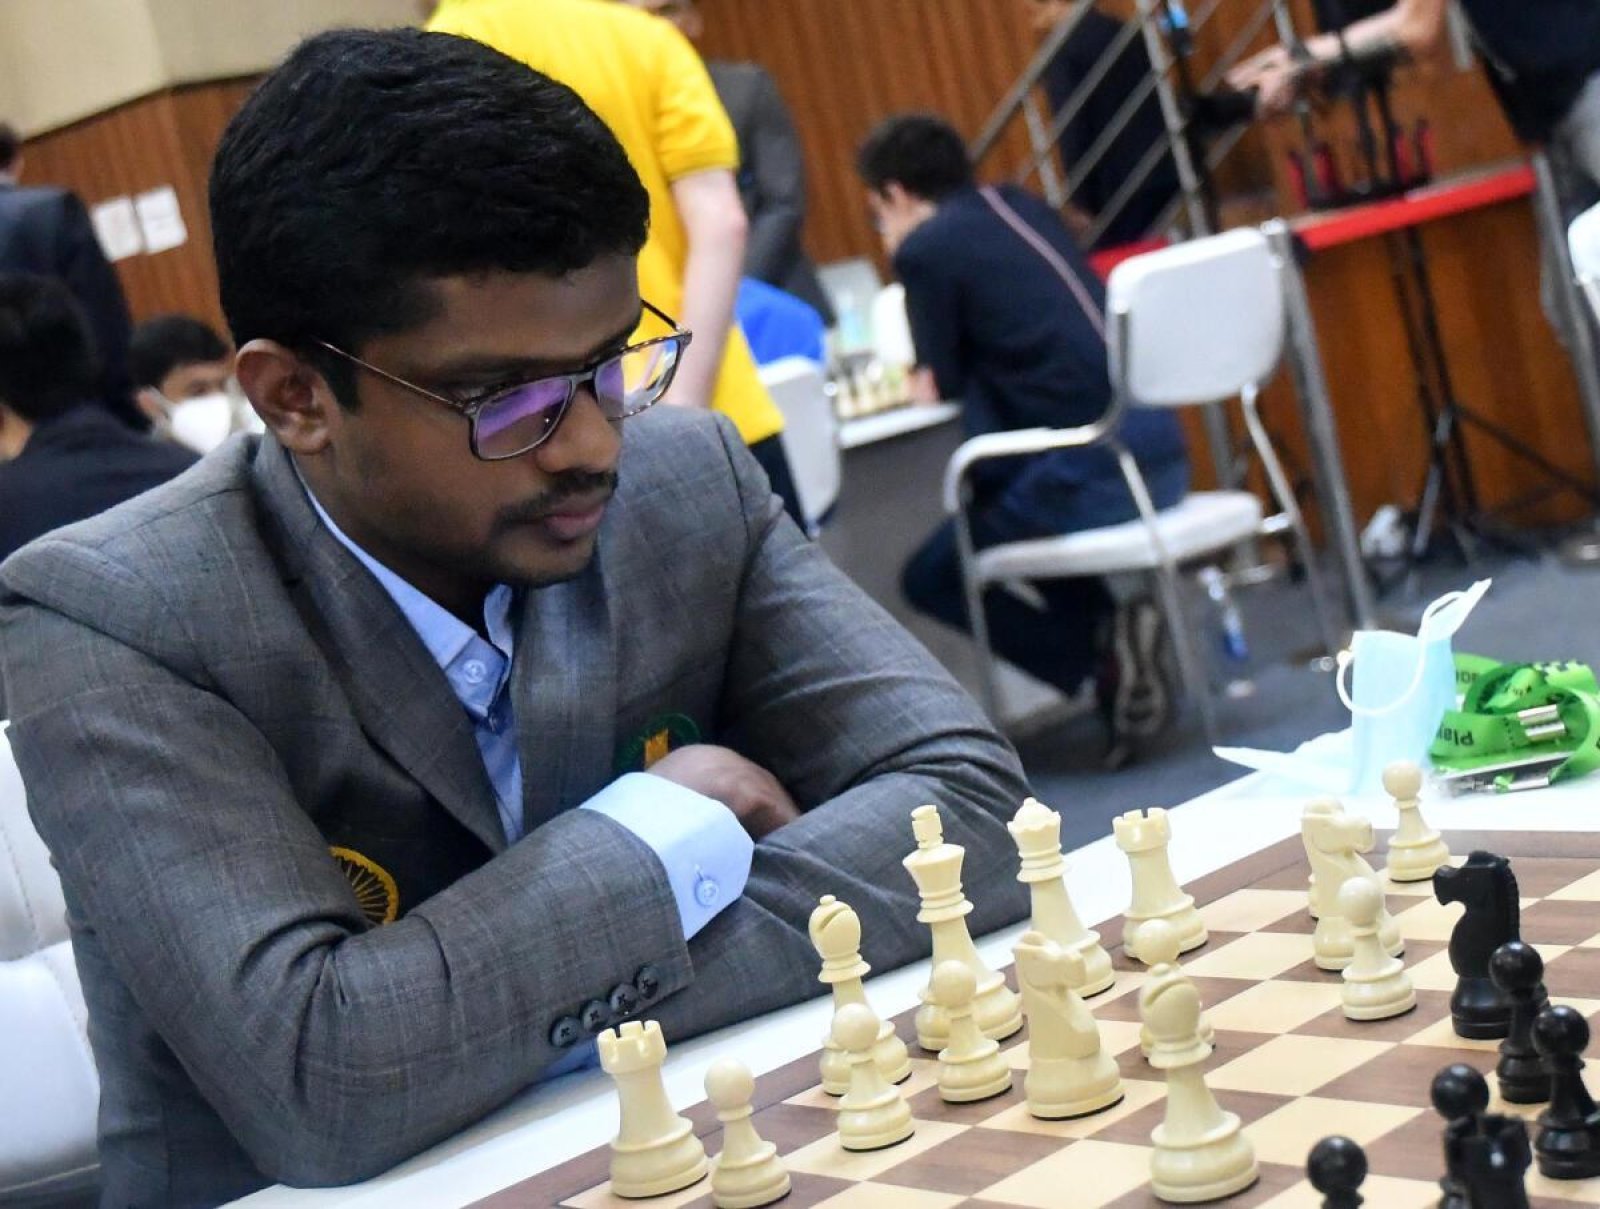 चेन्नई ग्रैंड मास्टर्स टूर्नामेंट में शतरंज खिलाड़ियों की मेटल डिटेक्टर से जांच क्यों की जा रही है?